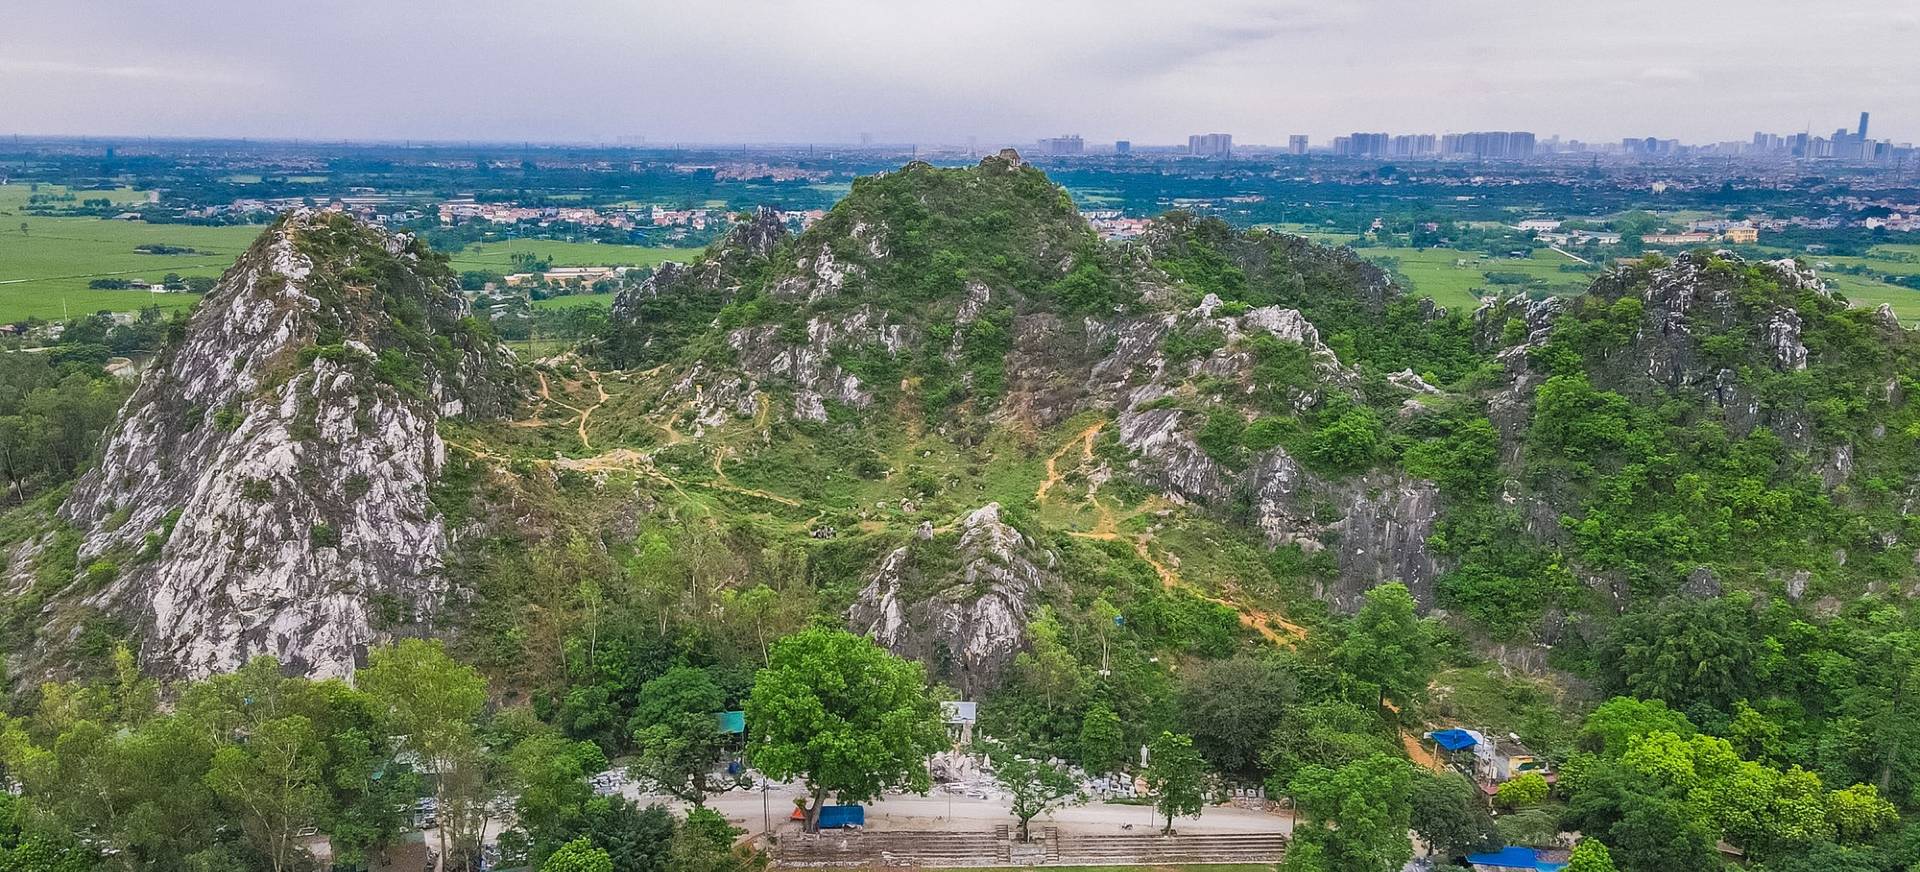 Ở Hà Nội có một “cao nguyên đá Hà Giang" không phải ai cũng biết, muốn đi chỉ cần chuẩn bị những thứ sau!